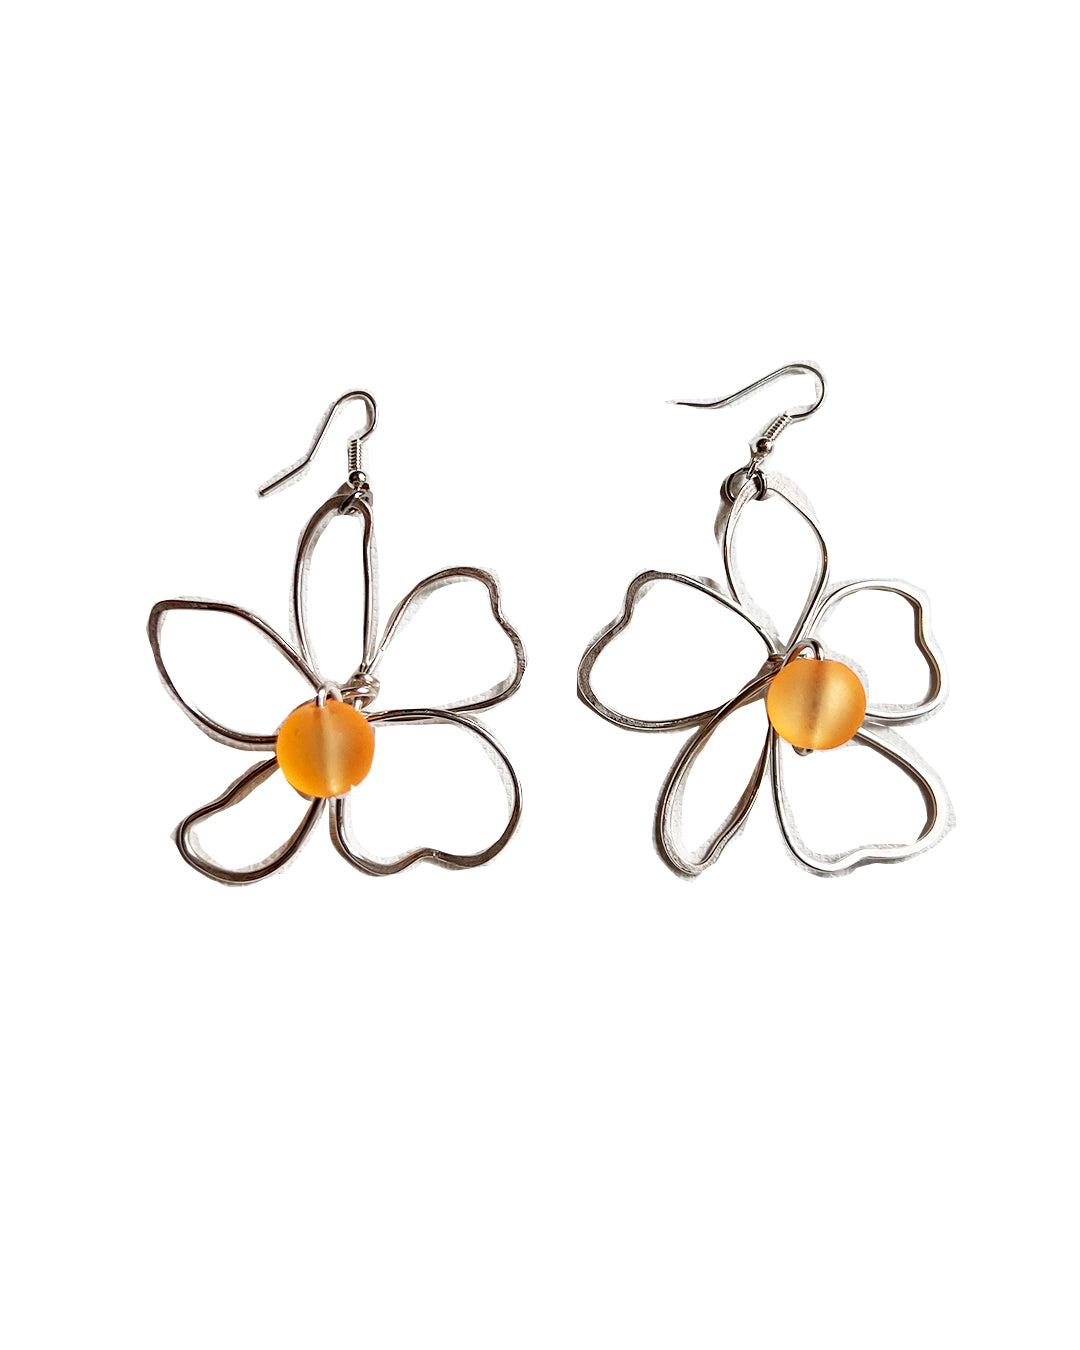 Silver Flower Earrings - Large Orange Translucent Acrylic Earrings